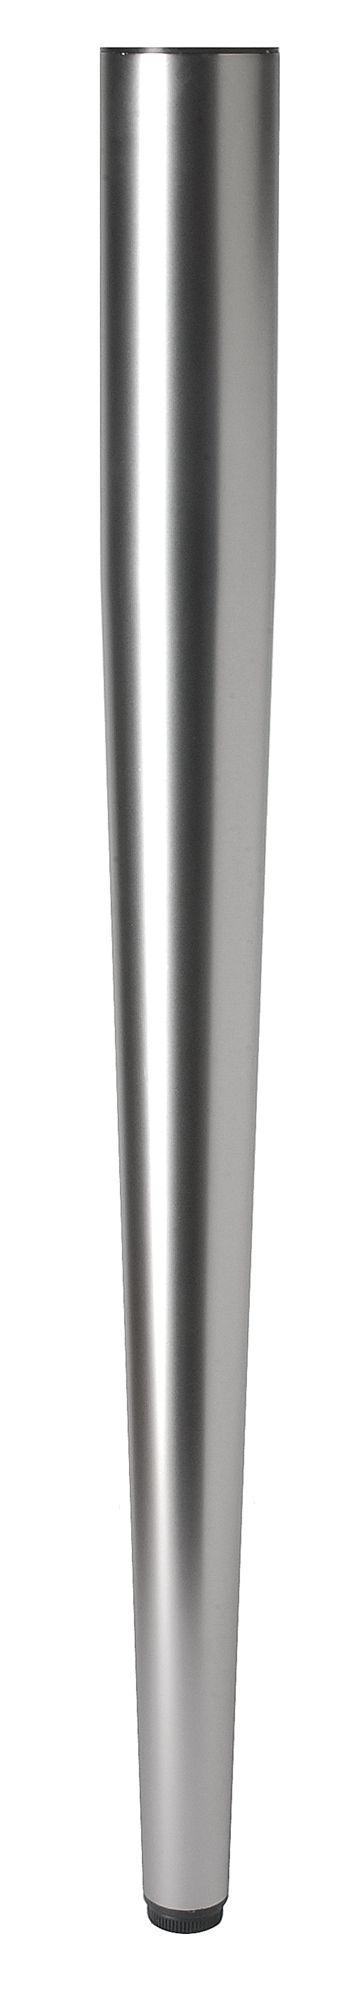 Rothley 710mm Stainless steel effect Designer leg